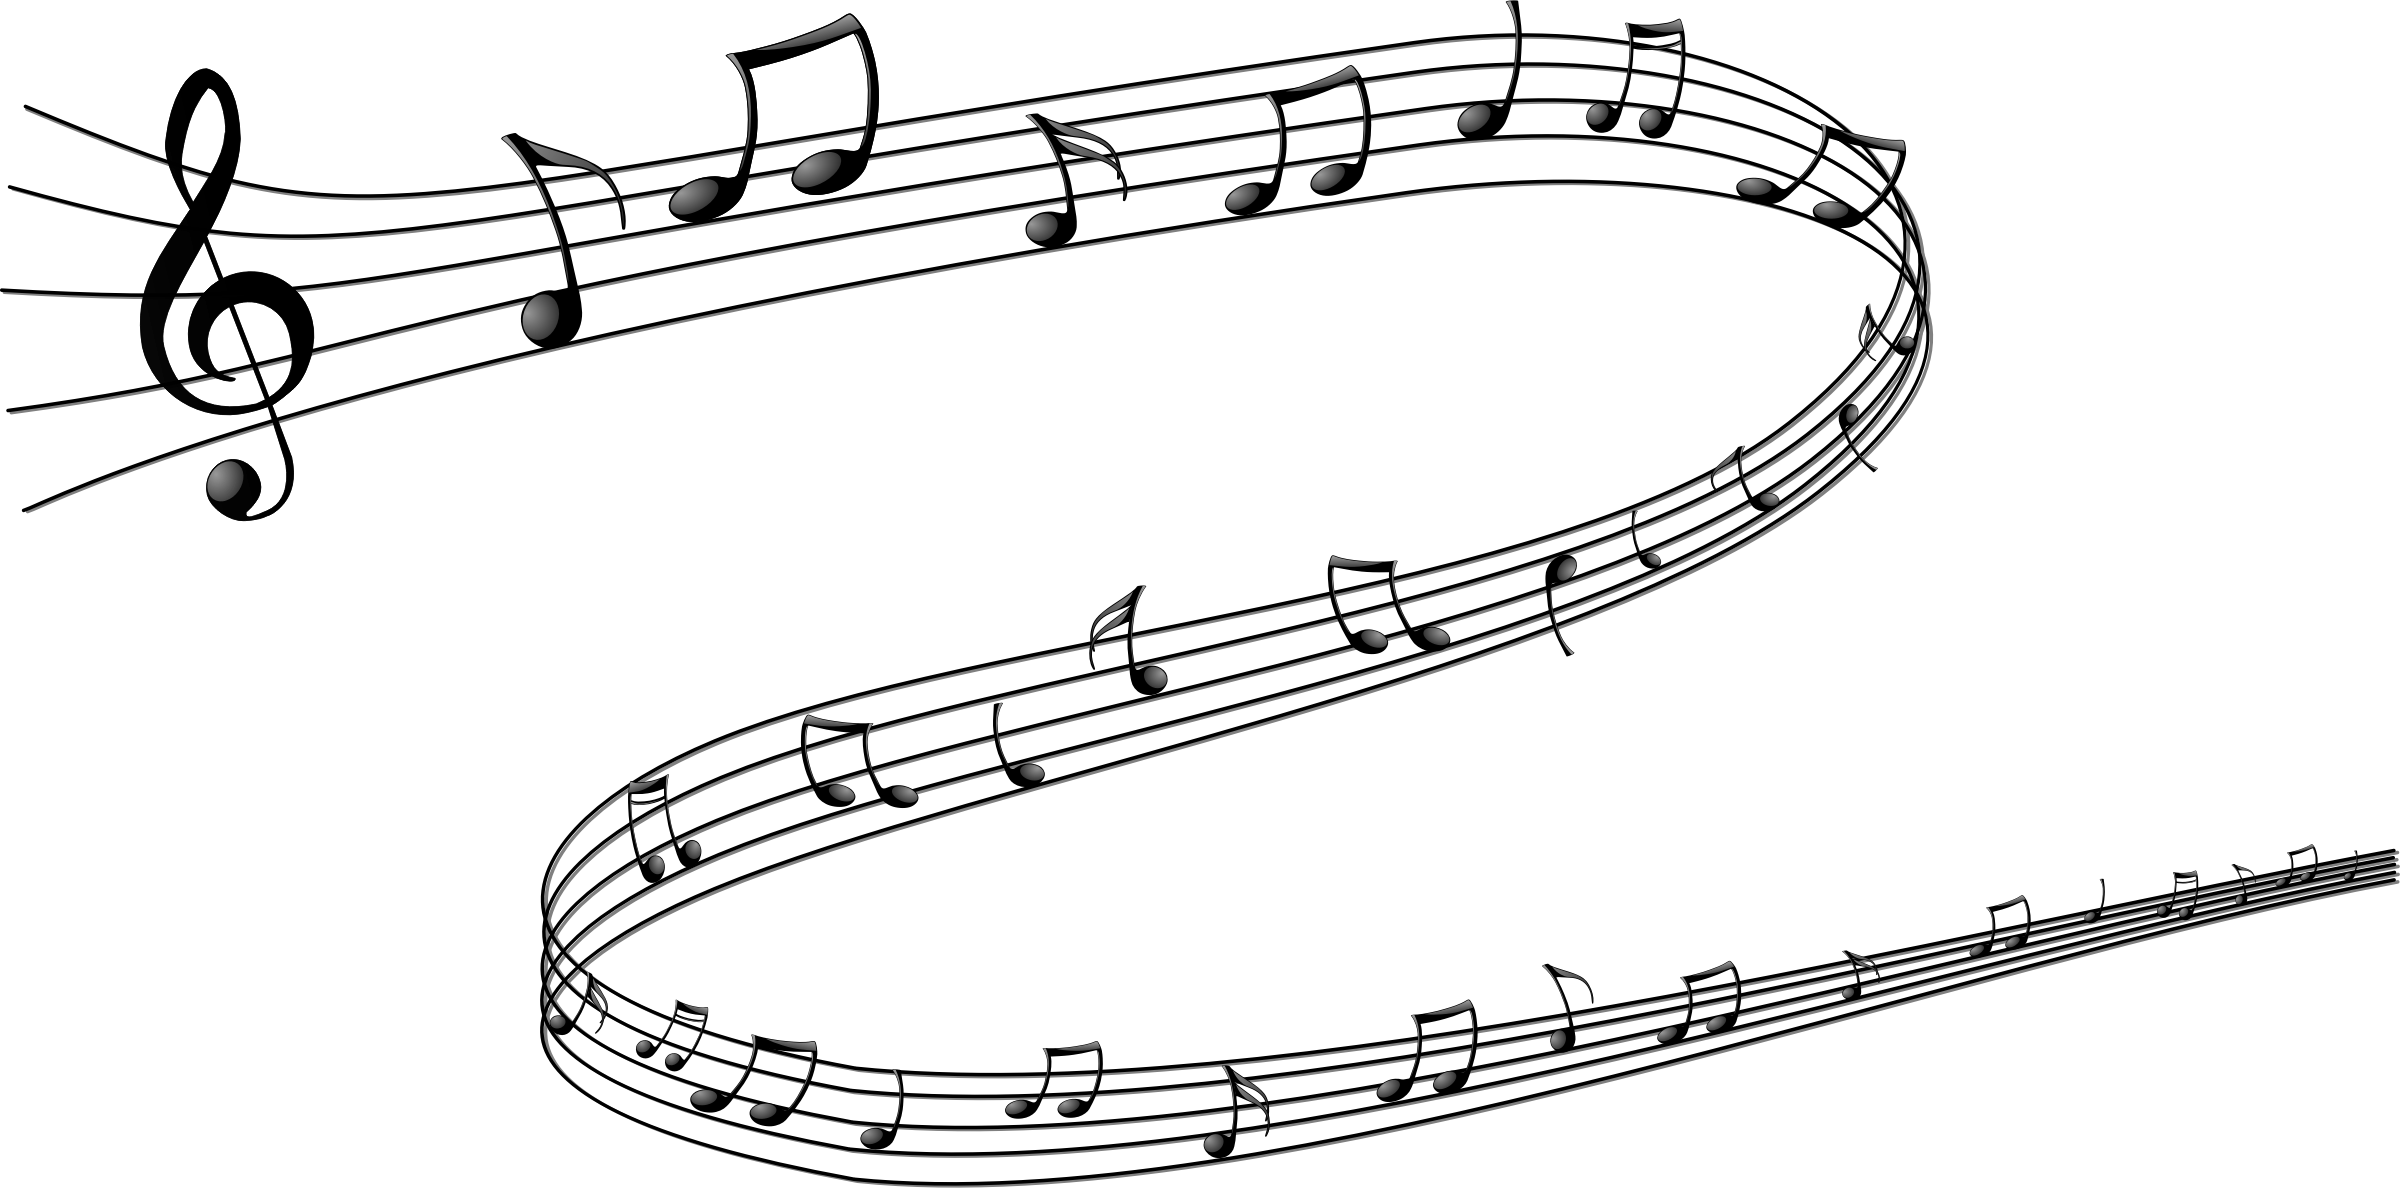 A Spiraling Musical Notes